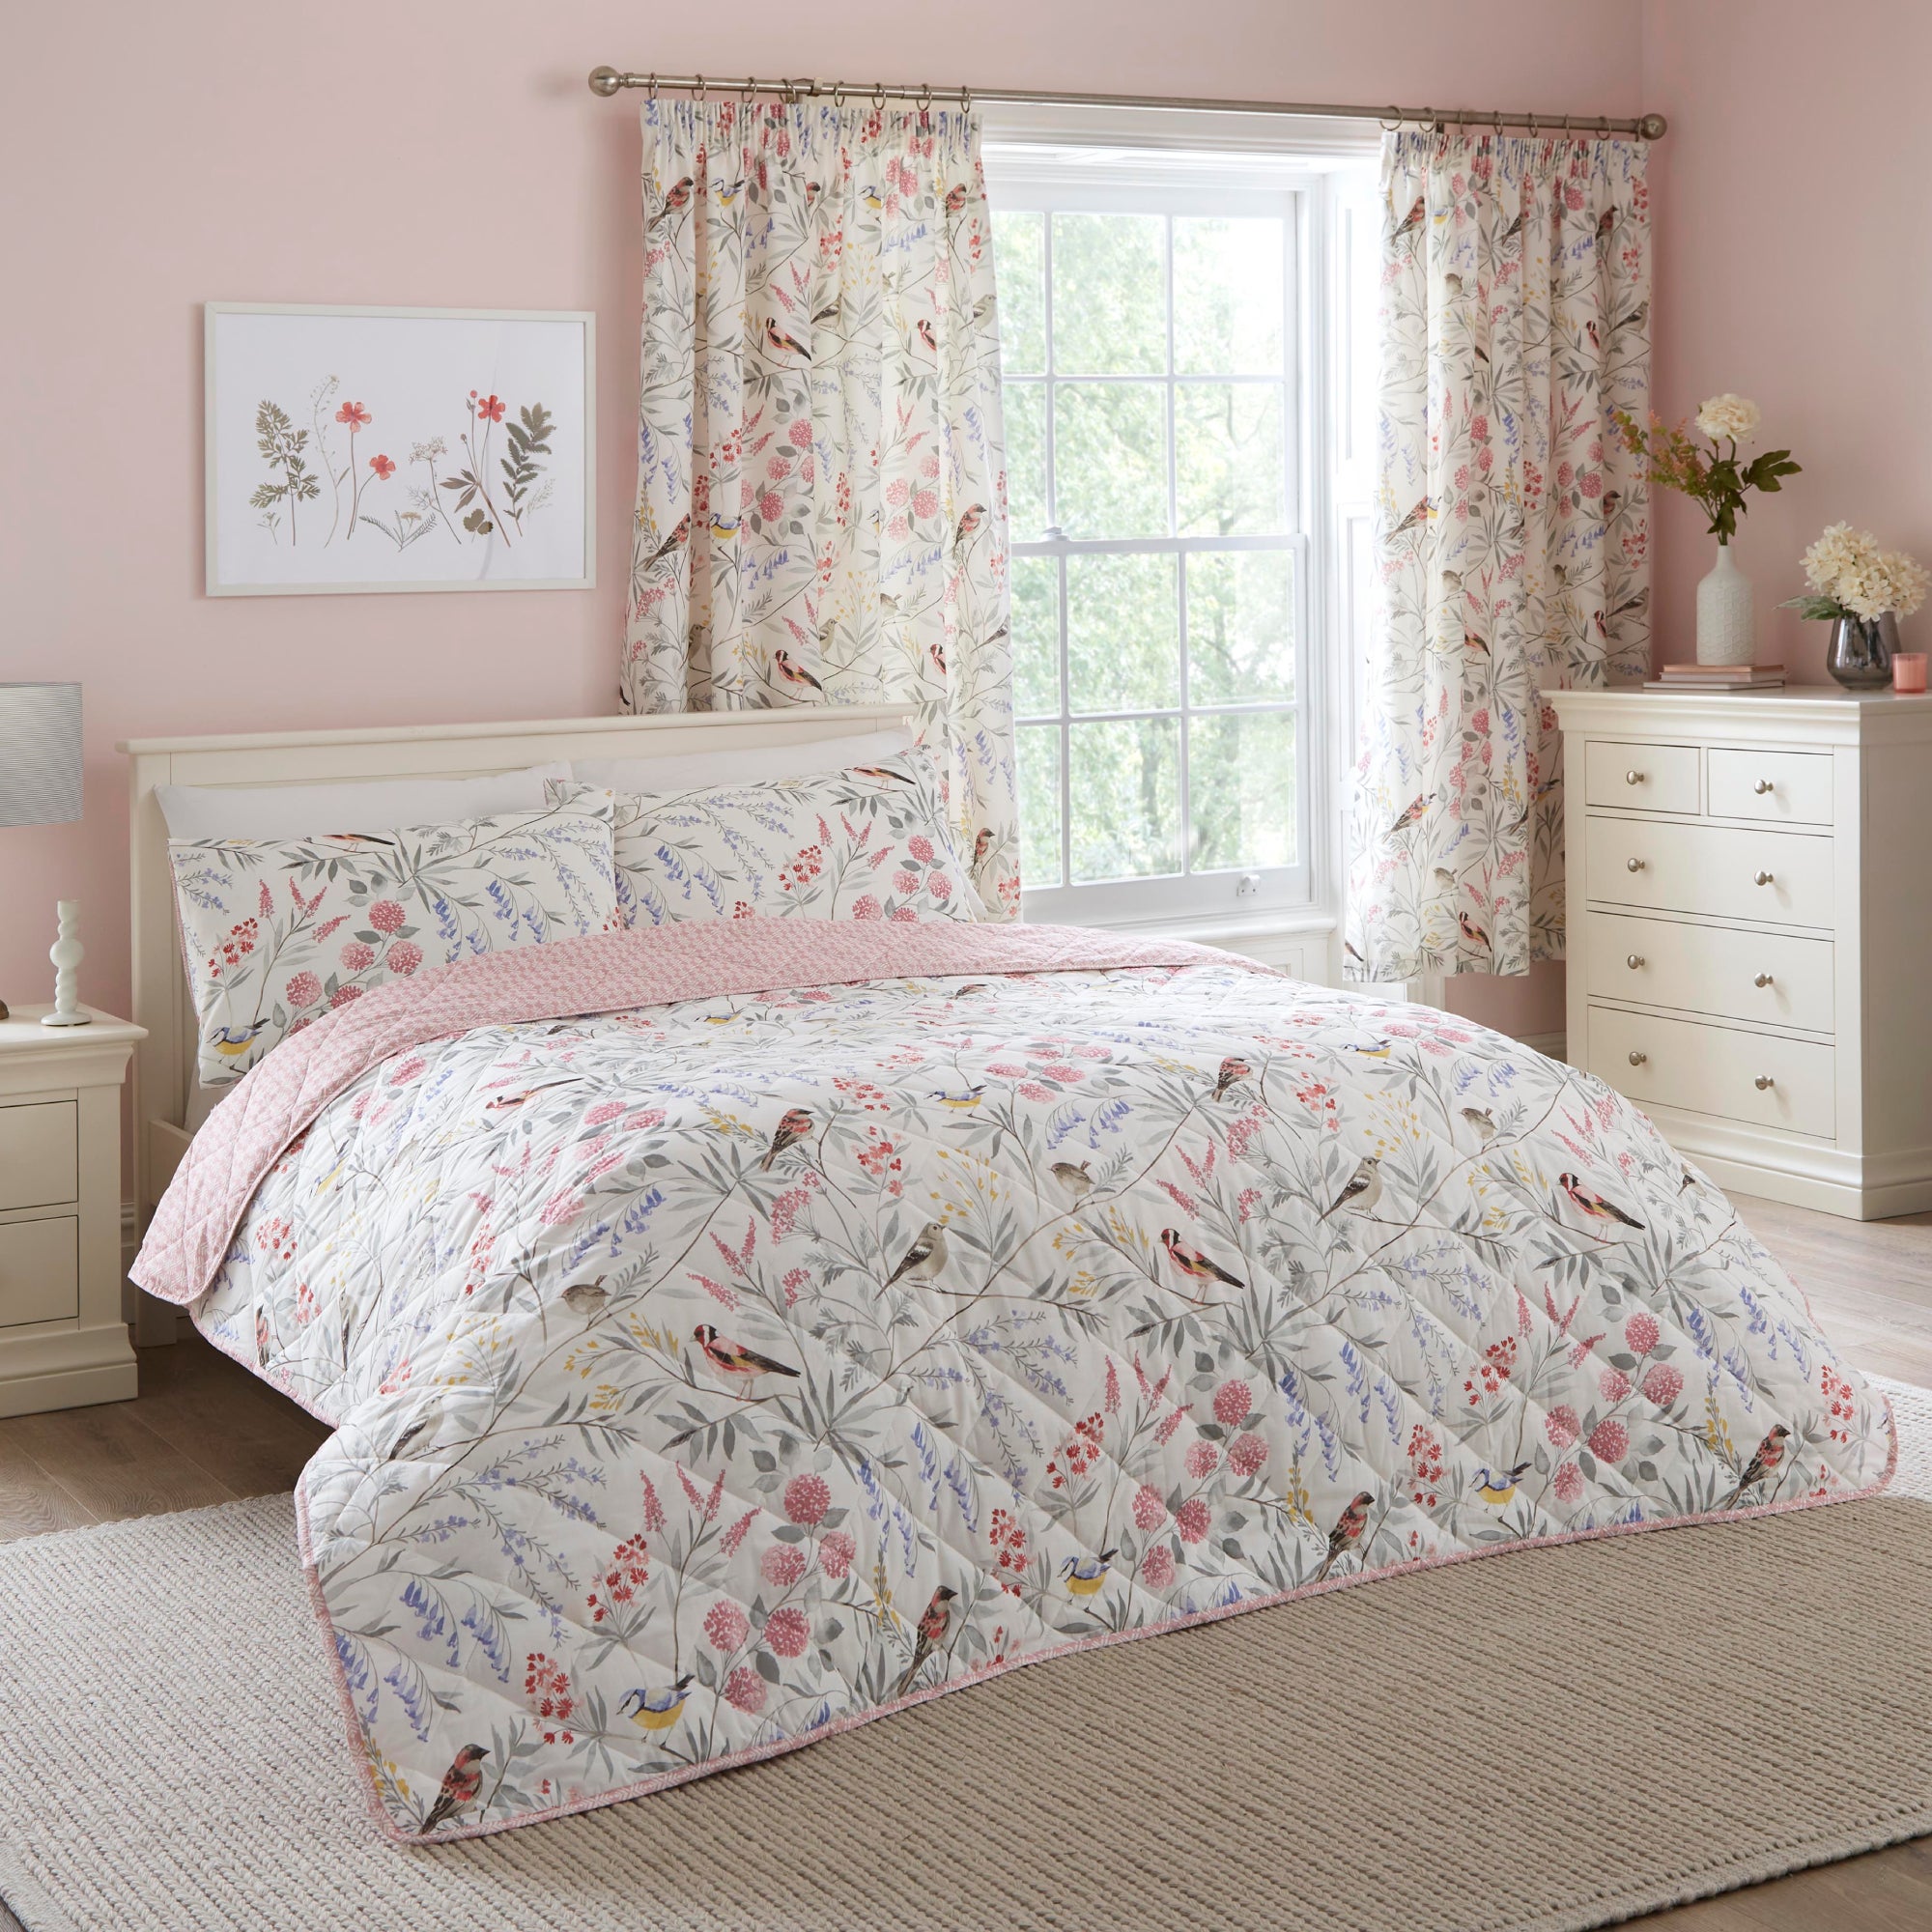 Photos - Bed Caraway Pink Bedspread 230cm x 200cm Pink 